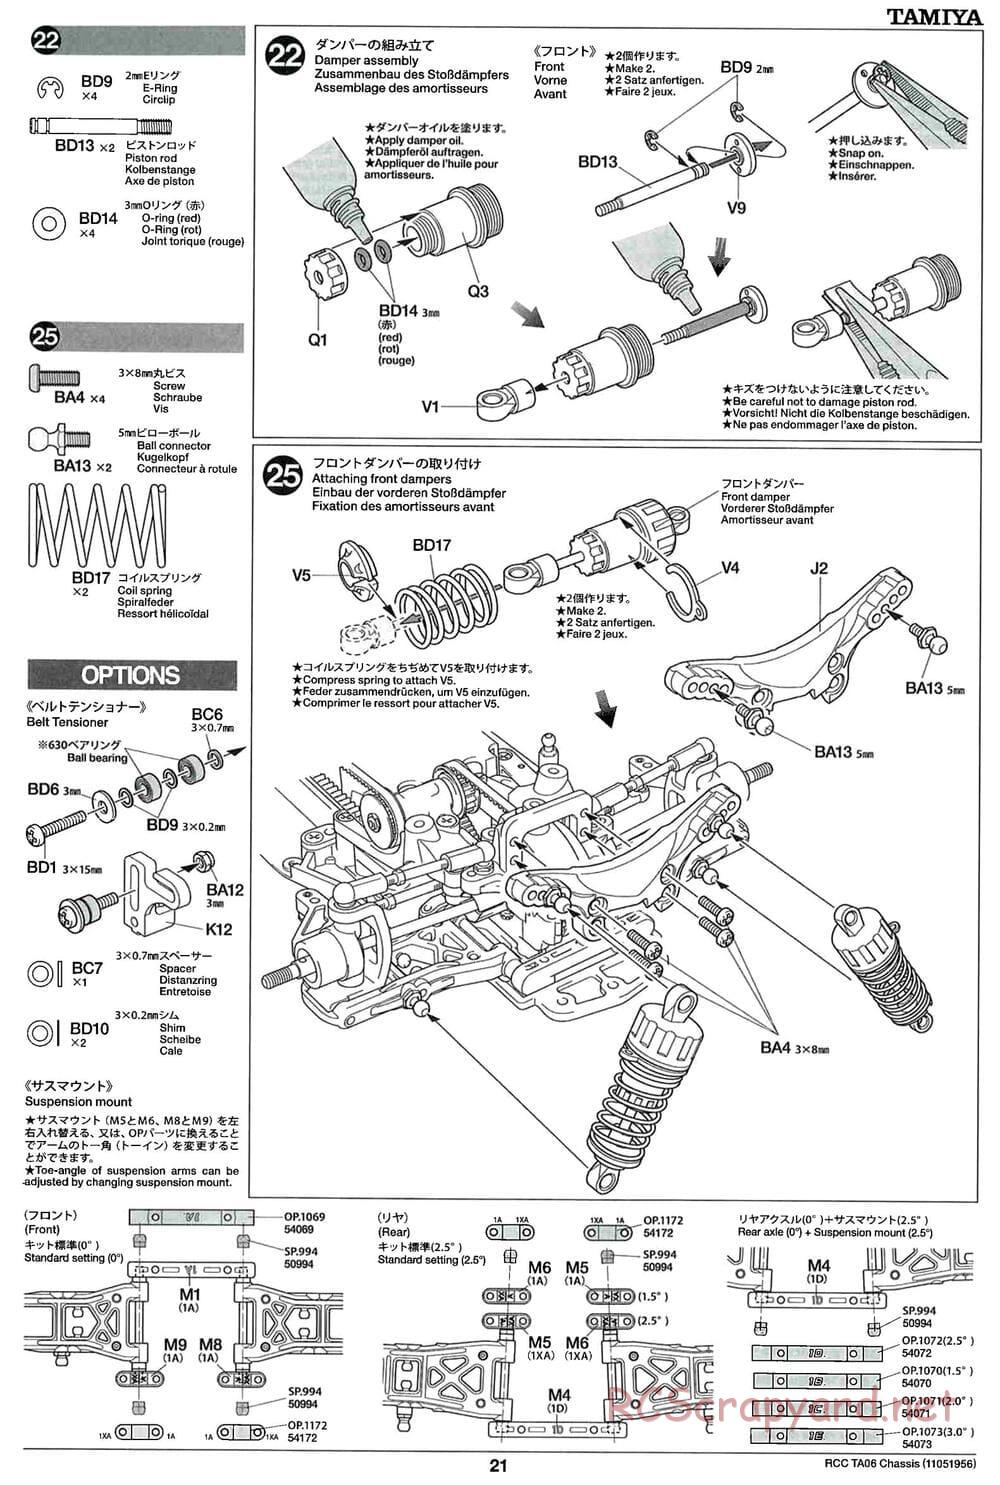 Tamiya - TA06 Chassis - Manual - Page 21